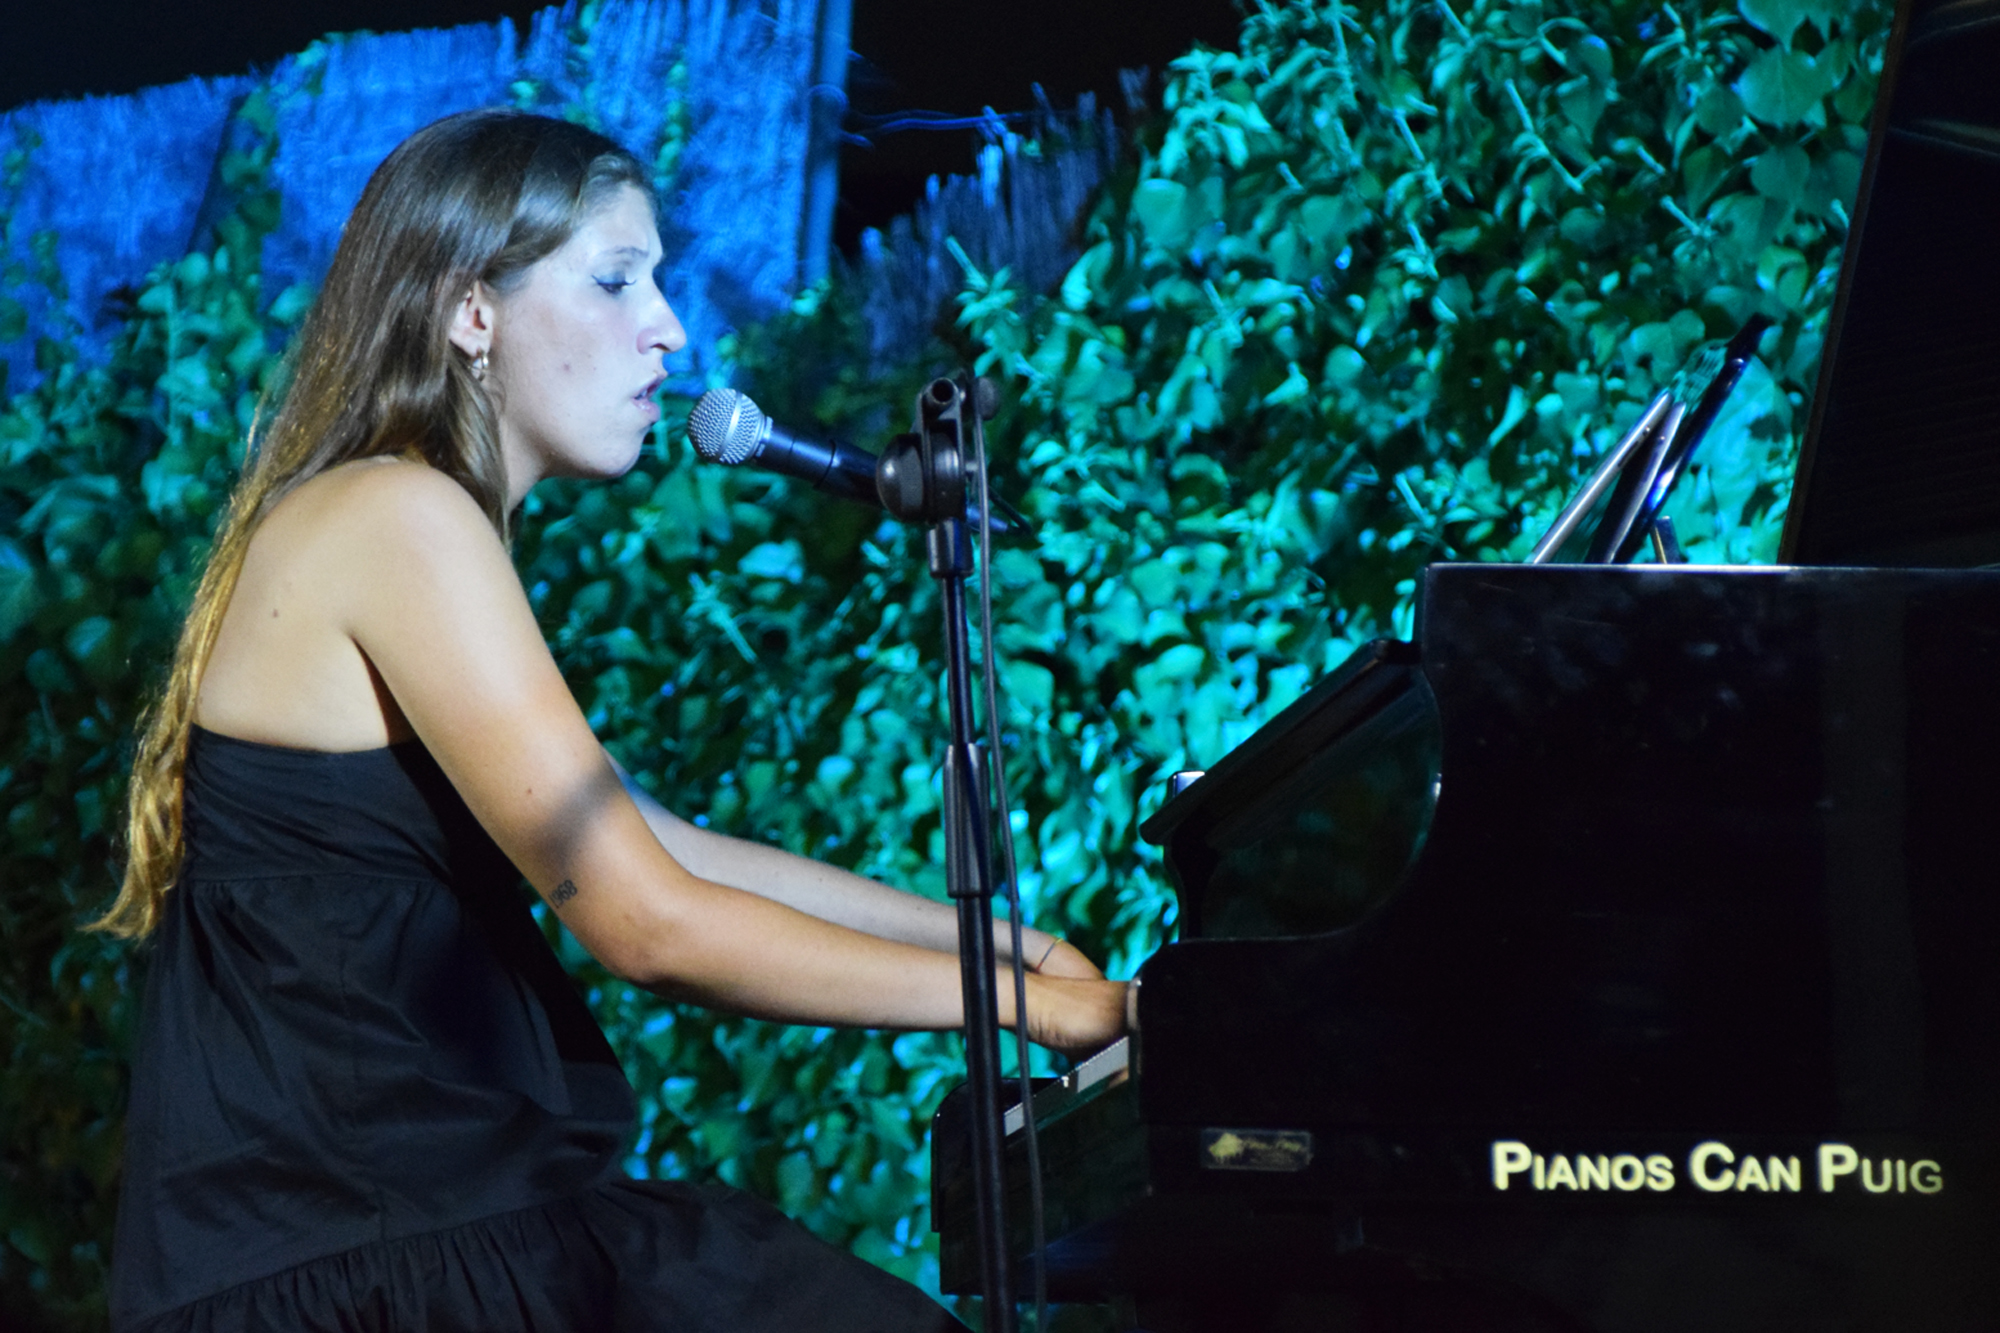 'Can Caralt, obert per vacances': Clara Requejo, piano i veu, aluman de l'Escola Municipal de Msica. Divendres, 20 d'agost de 2021